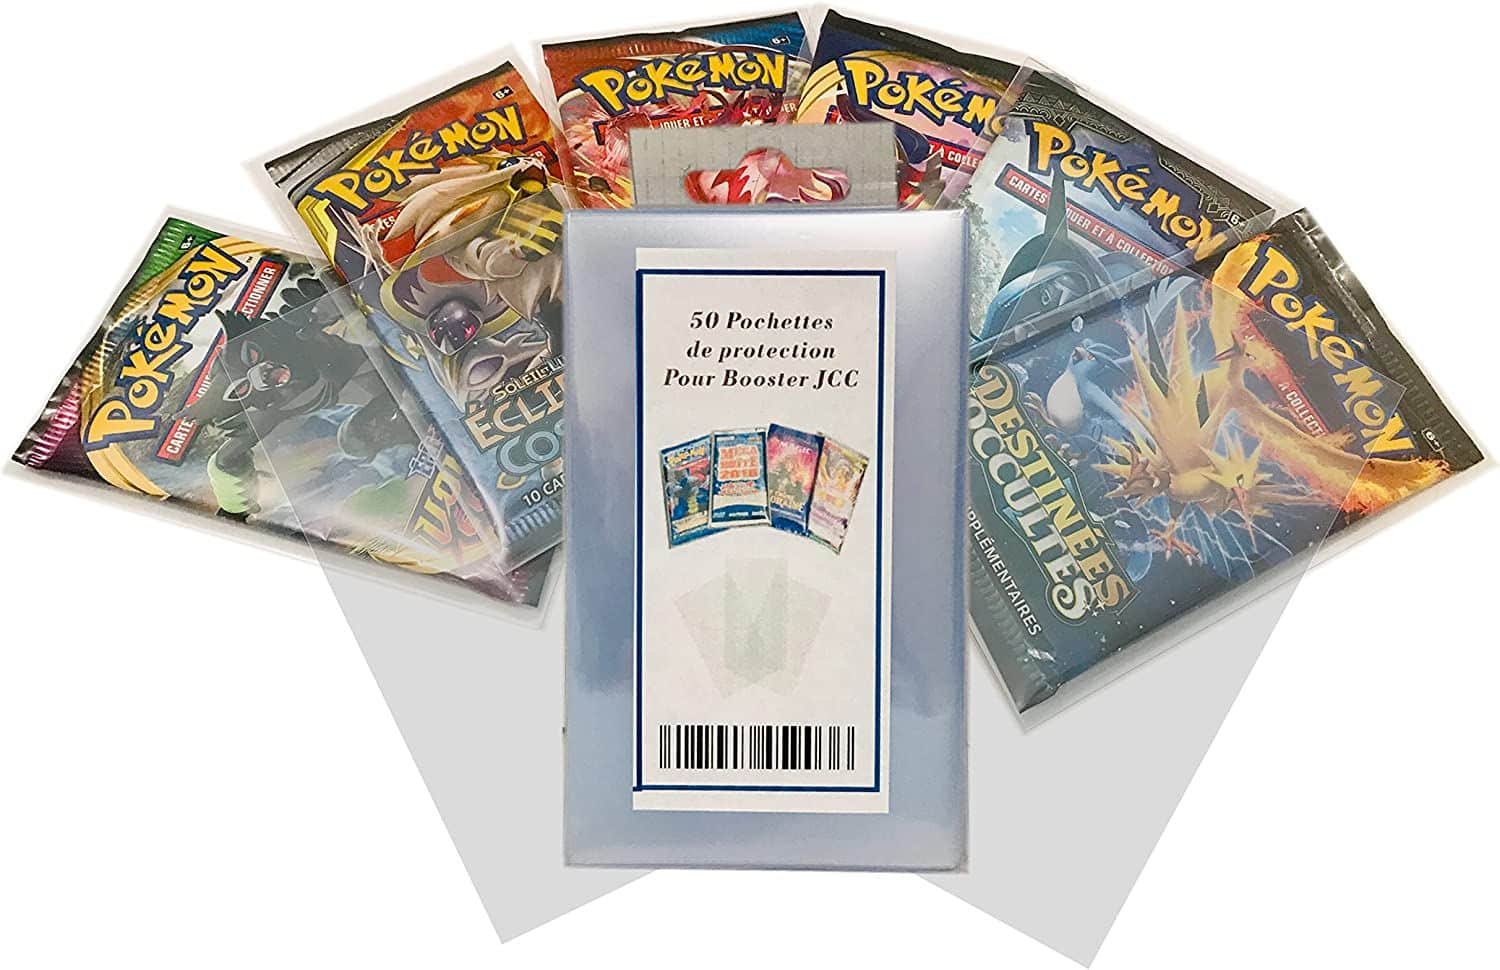 Comment protéger et ranger sa collection de cartes Pokémon?